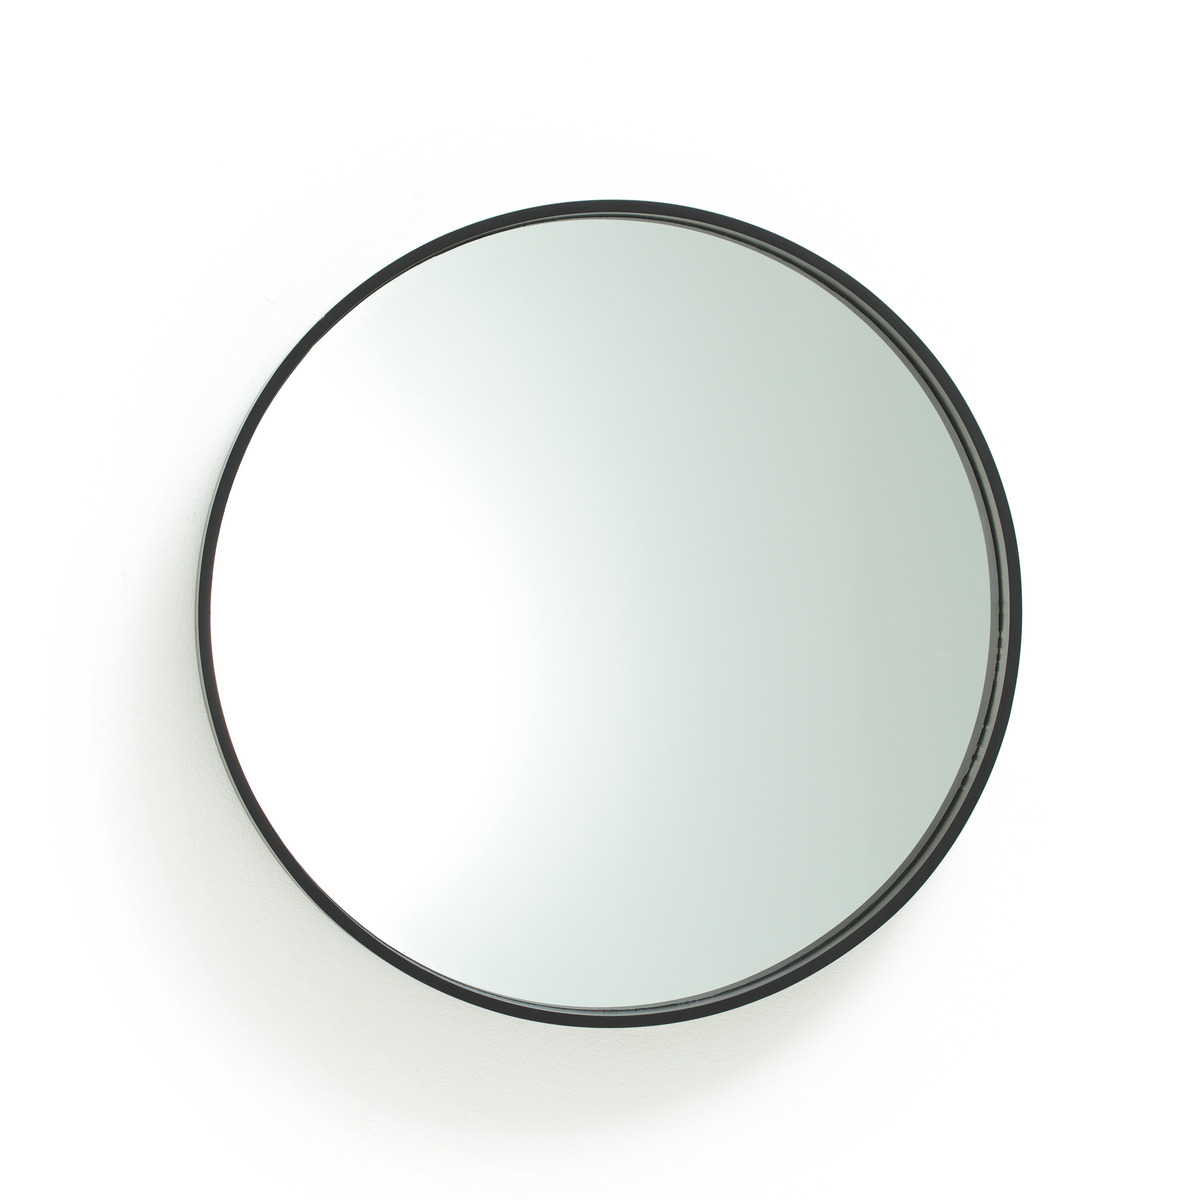 Alaria 55cm Diameter Round Black Mirror - image 1